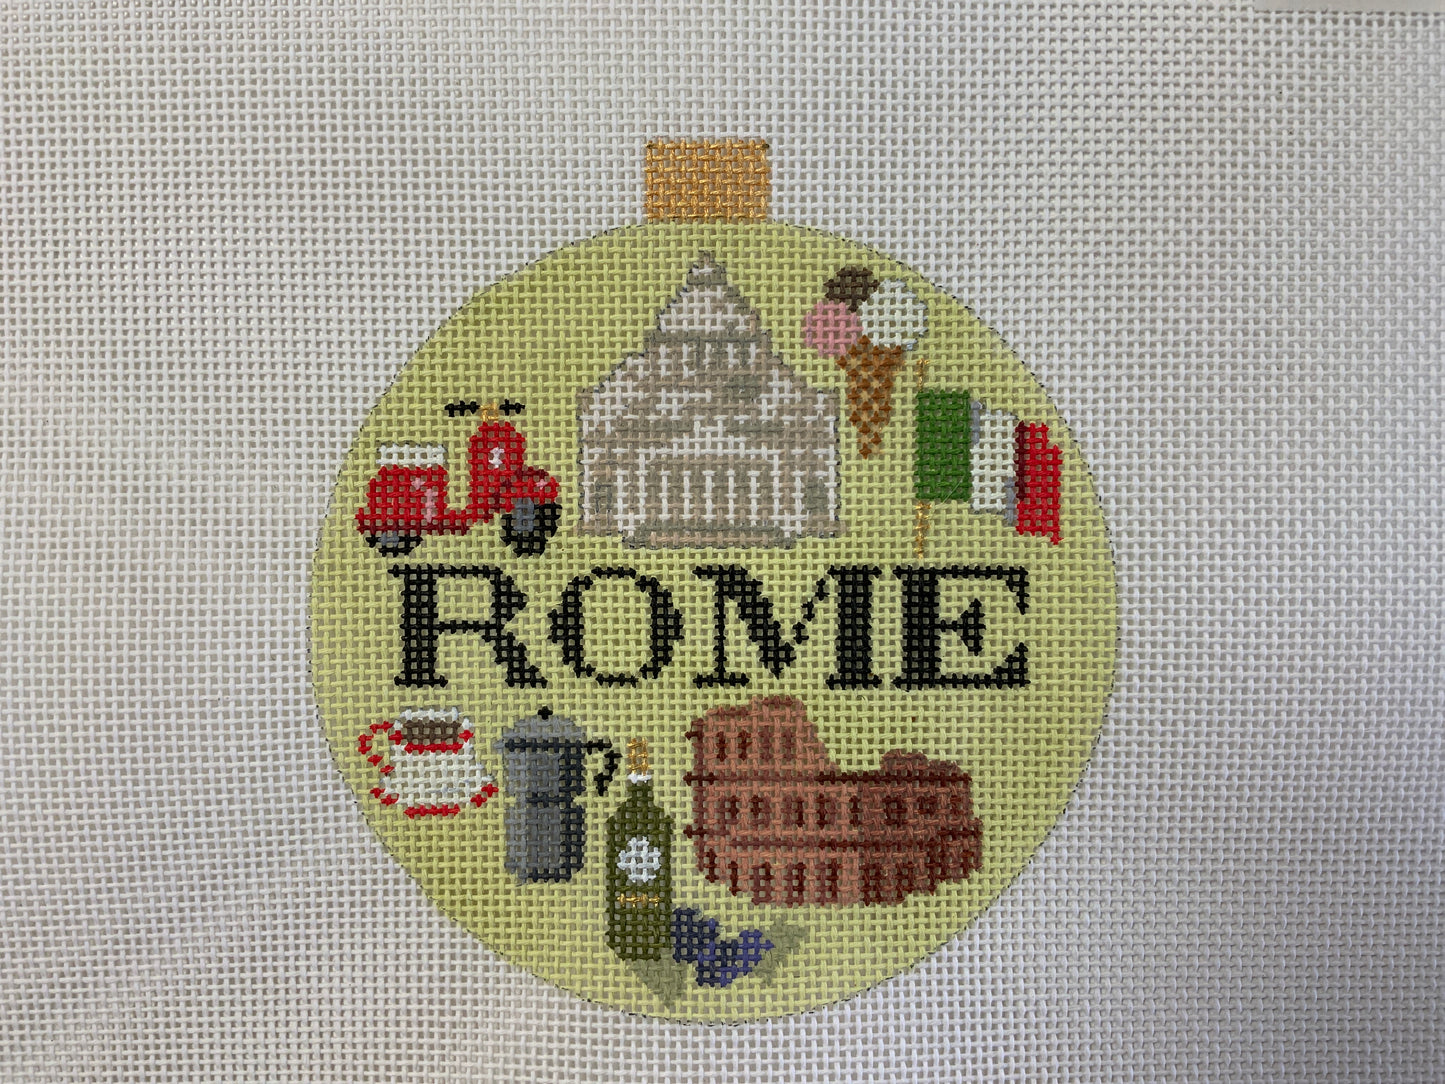 Round Rome